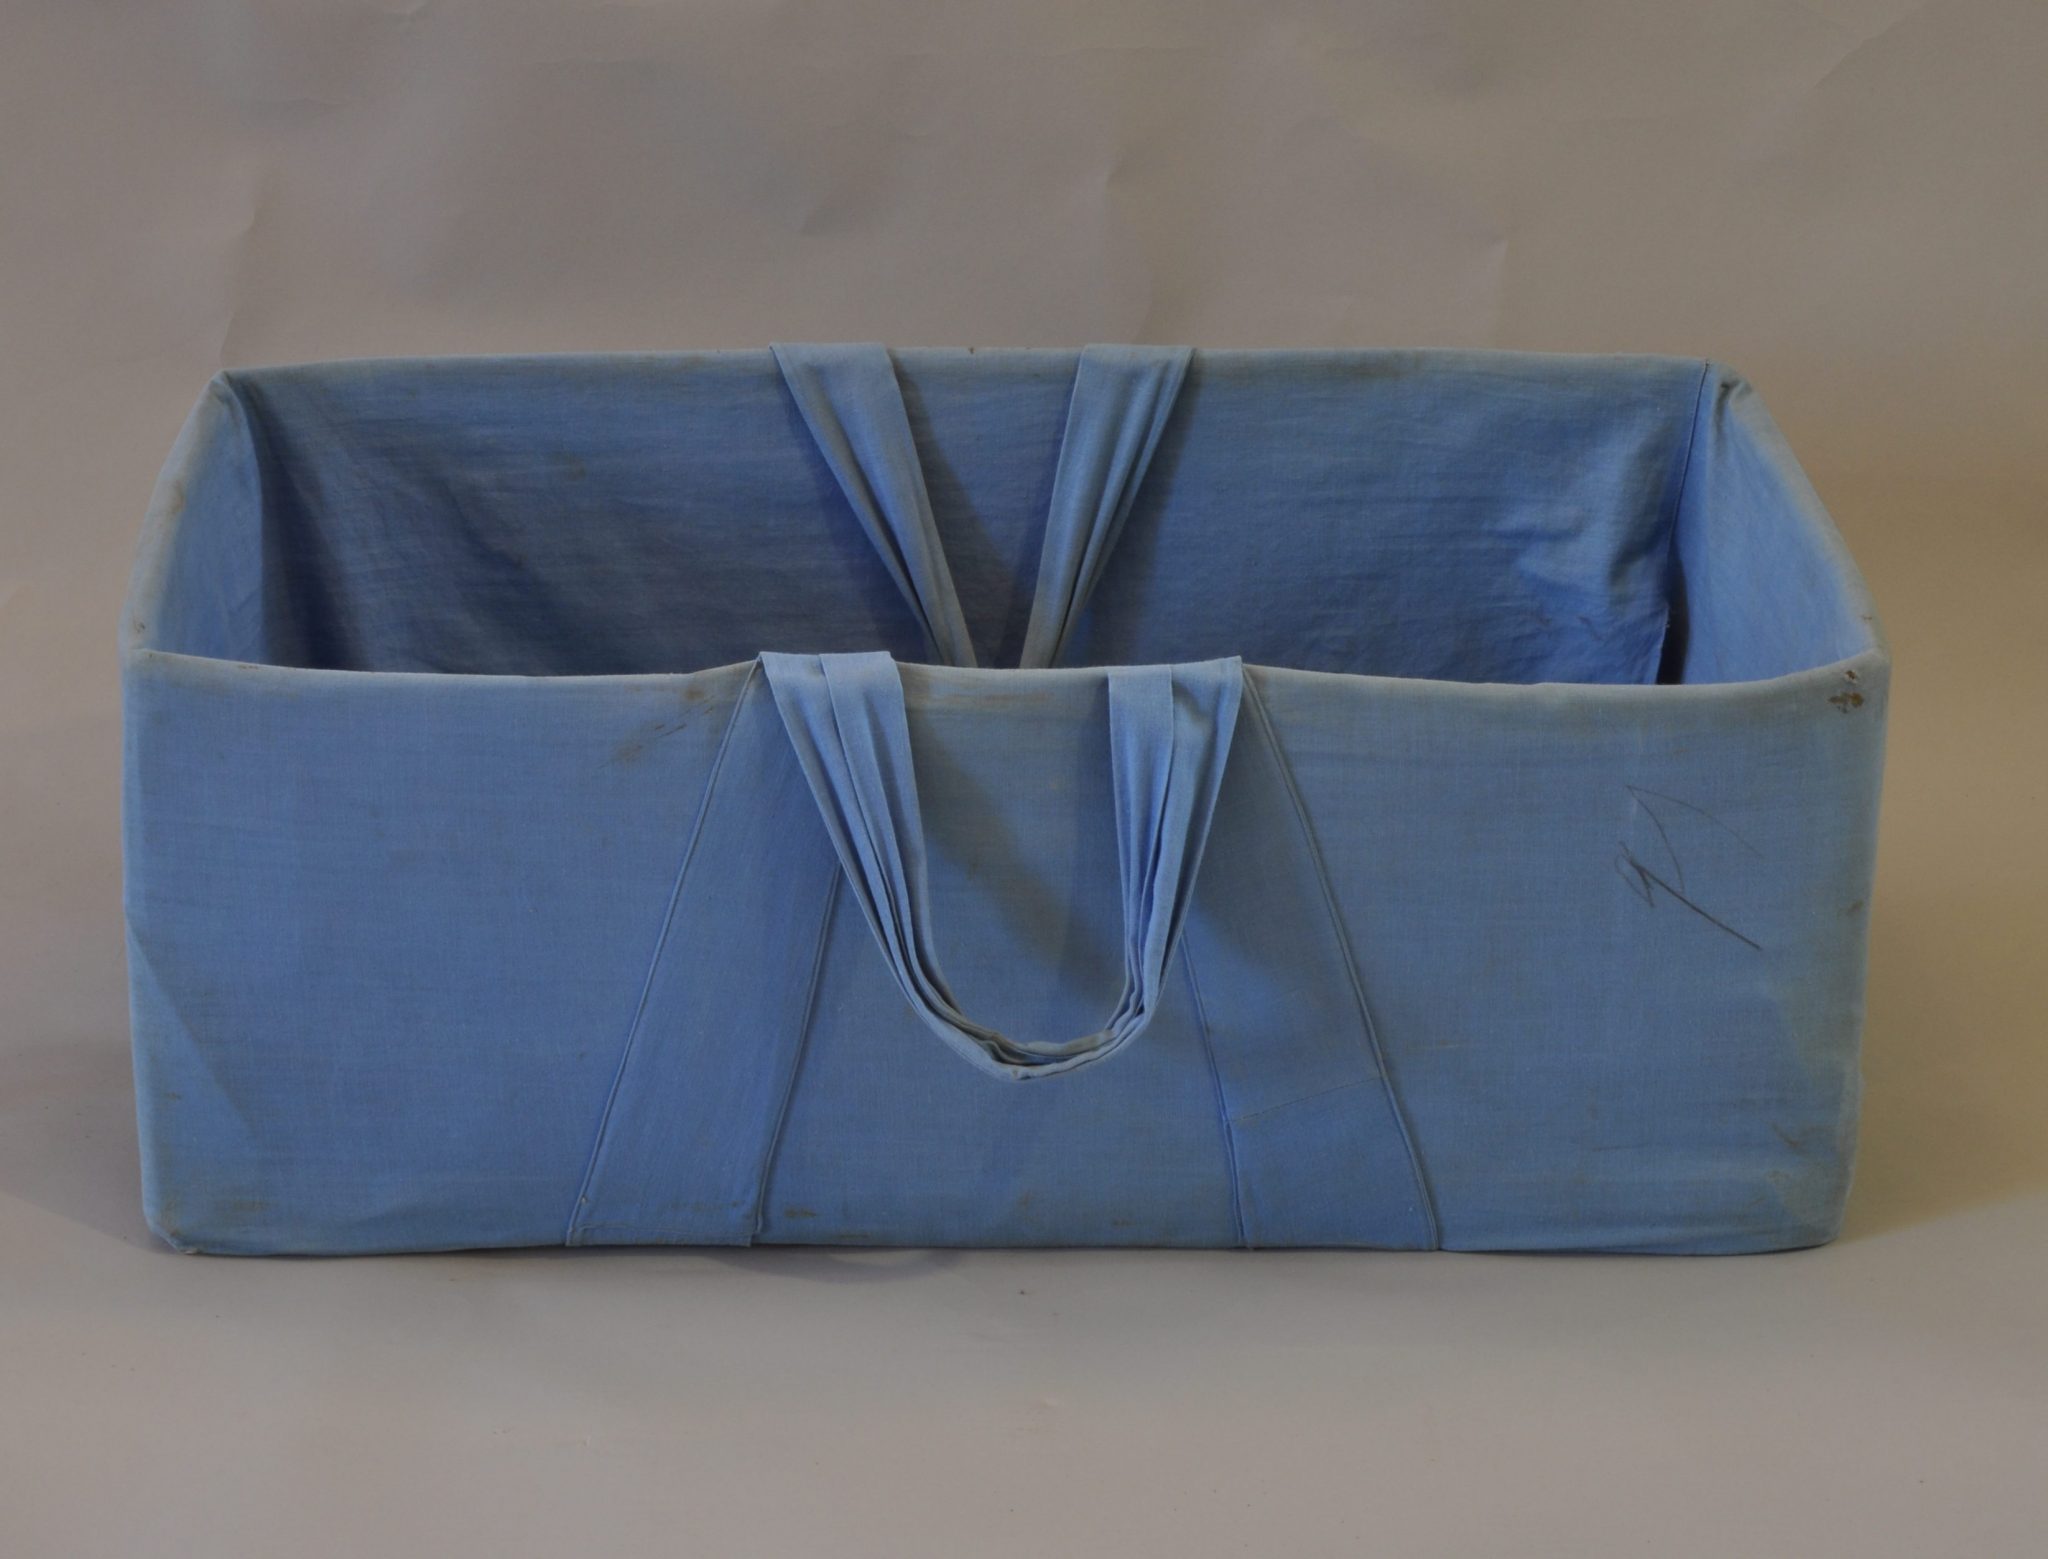 En blå bærebag fra 1950-tallet (Fotonr 10575) fra Fredrikstad museum